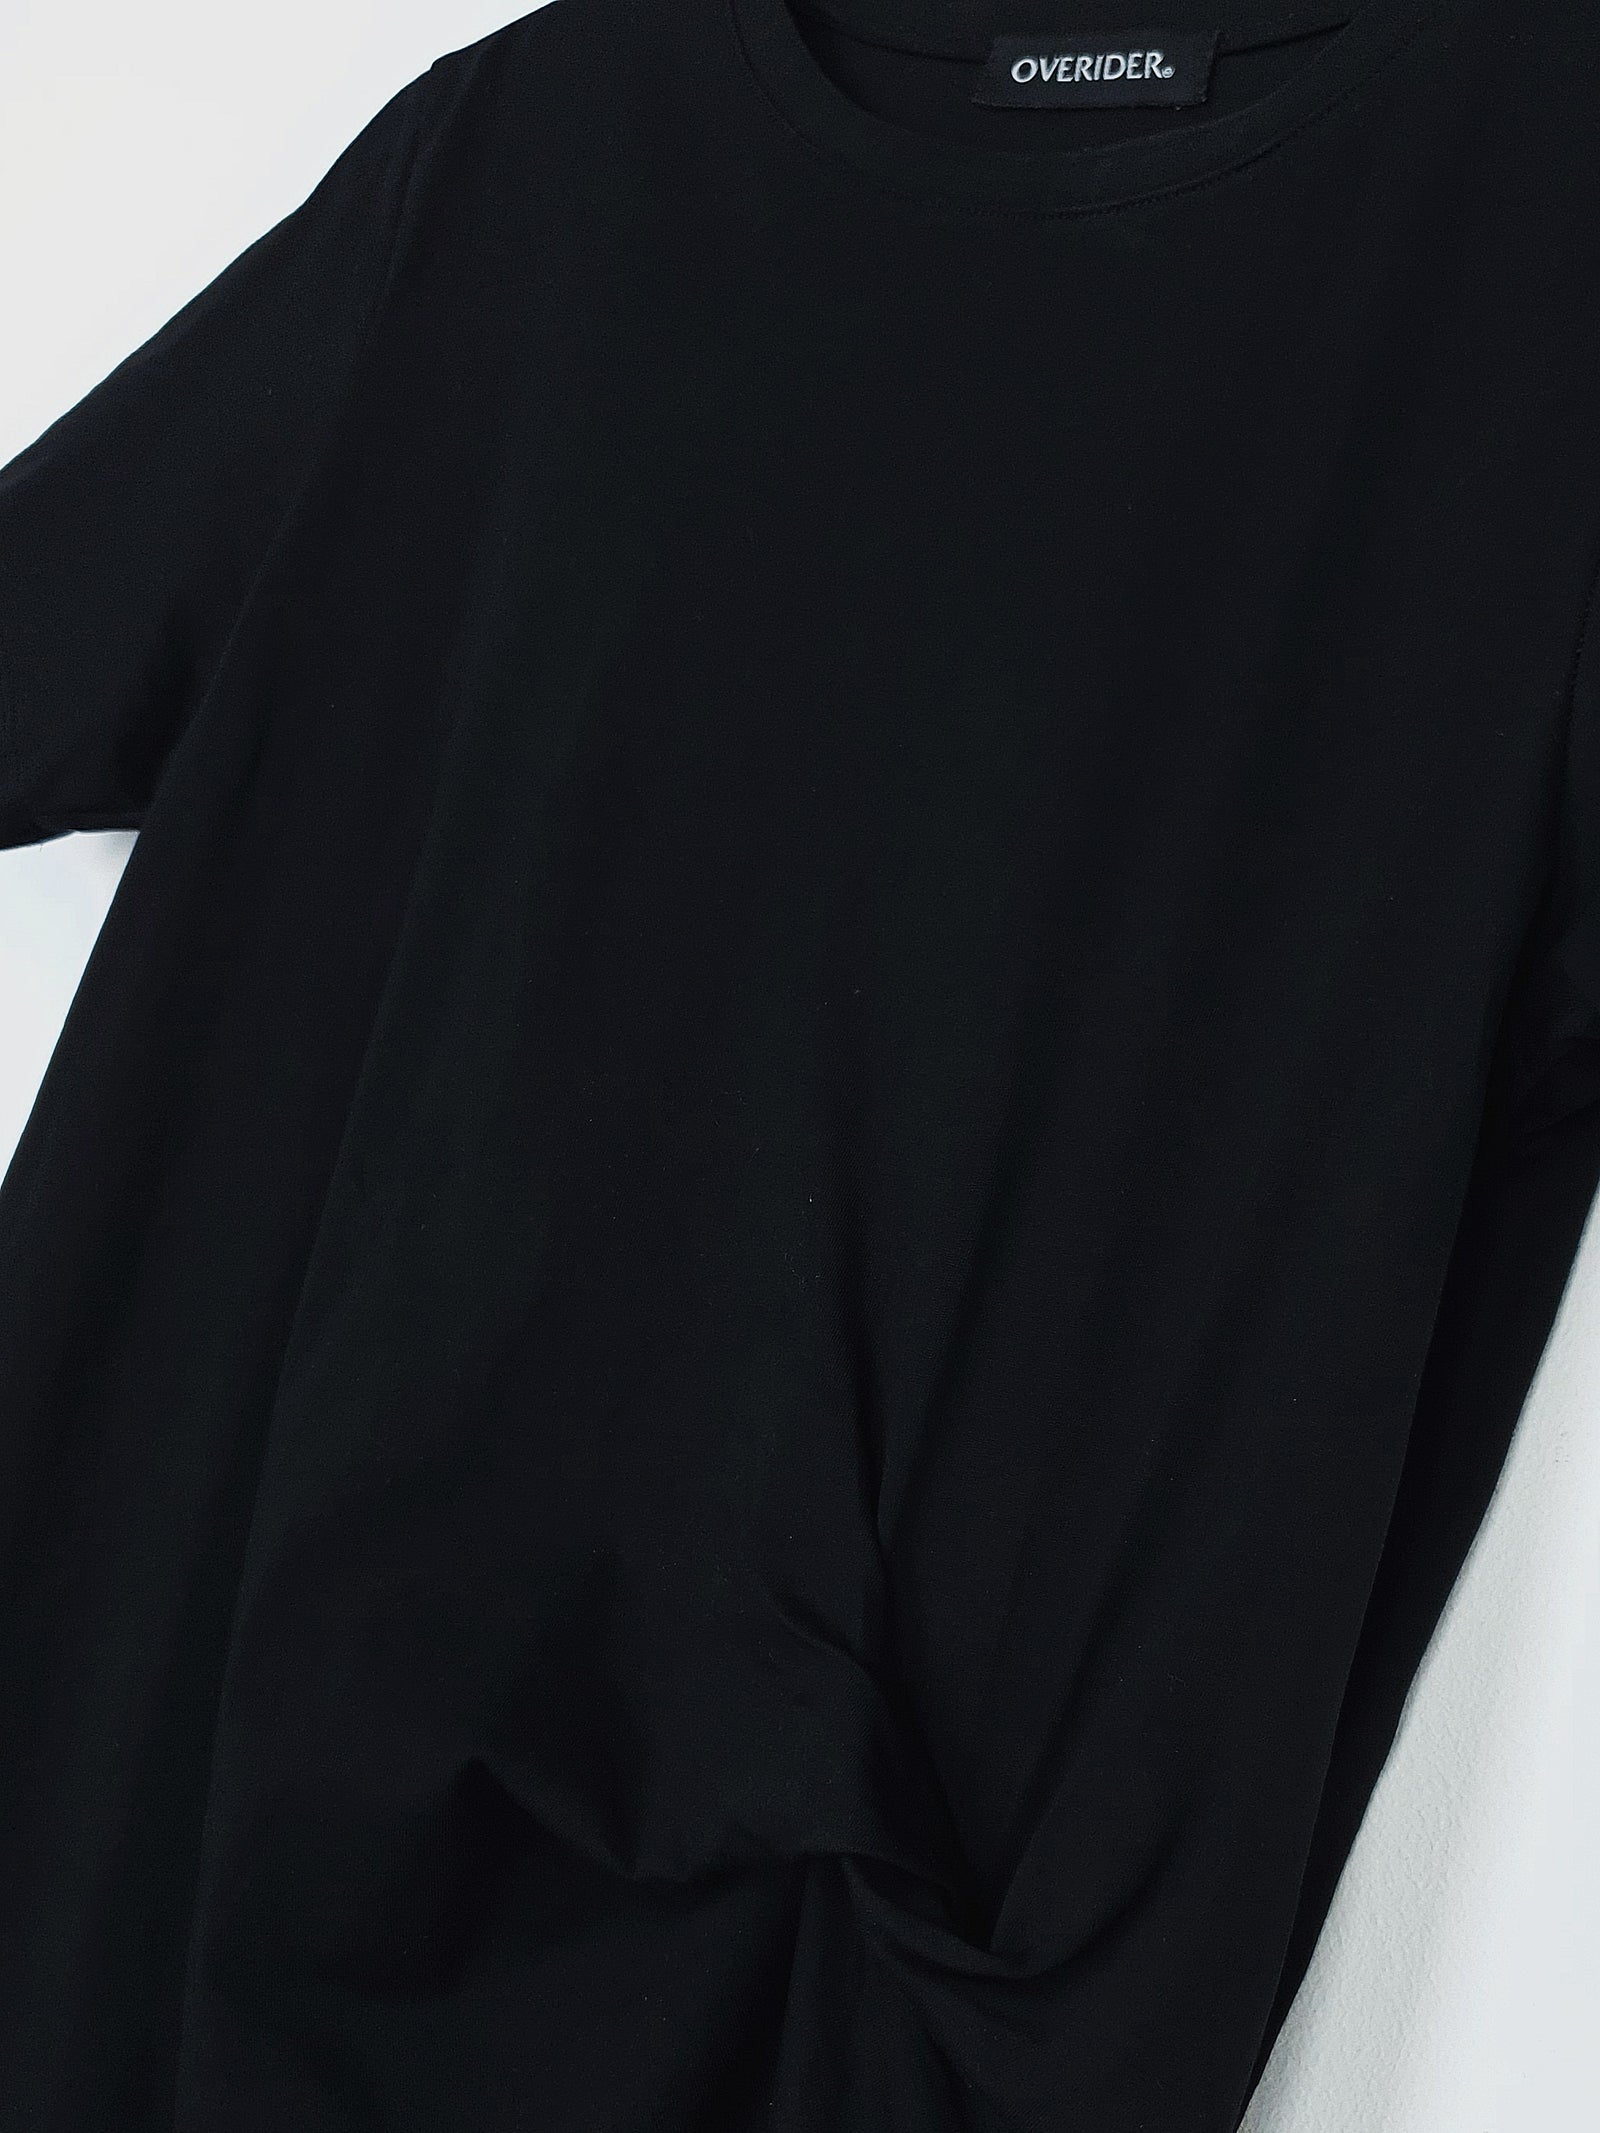 TASSA | Knotted Tunic Dress | Black